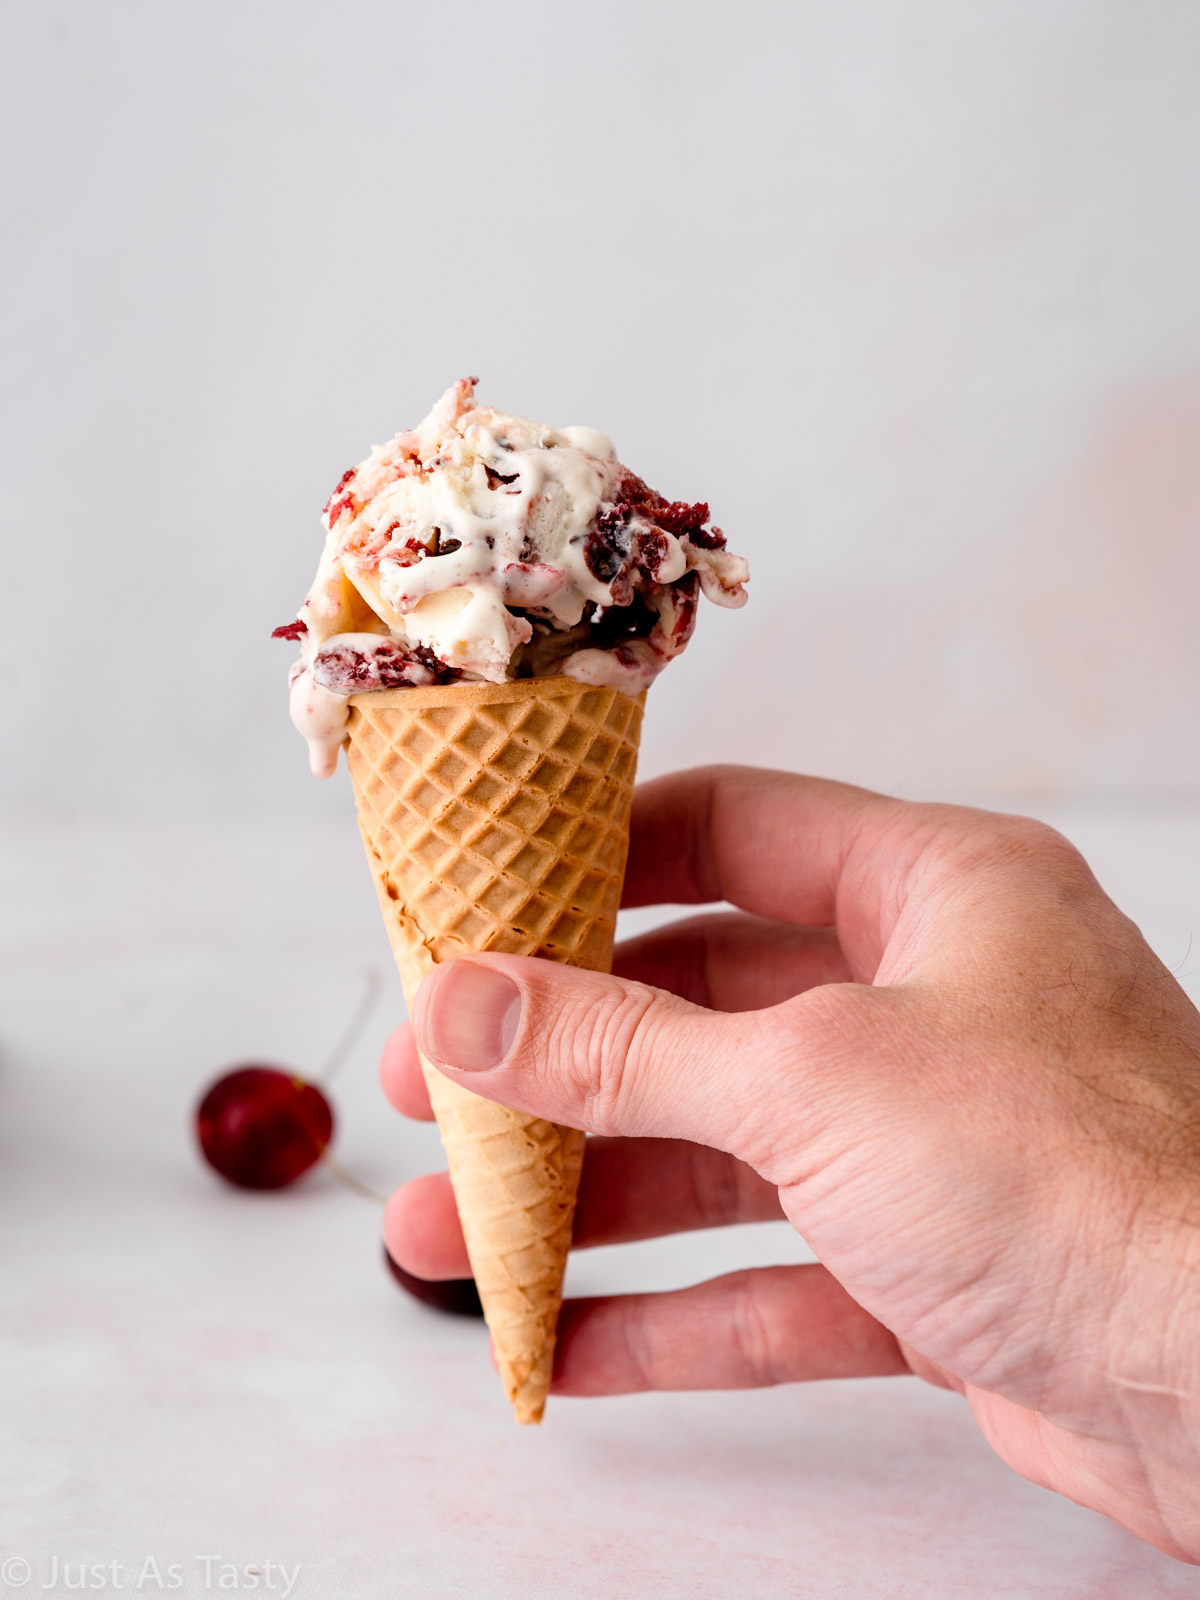 Black forest ice cream in a sugar cone.